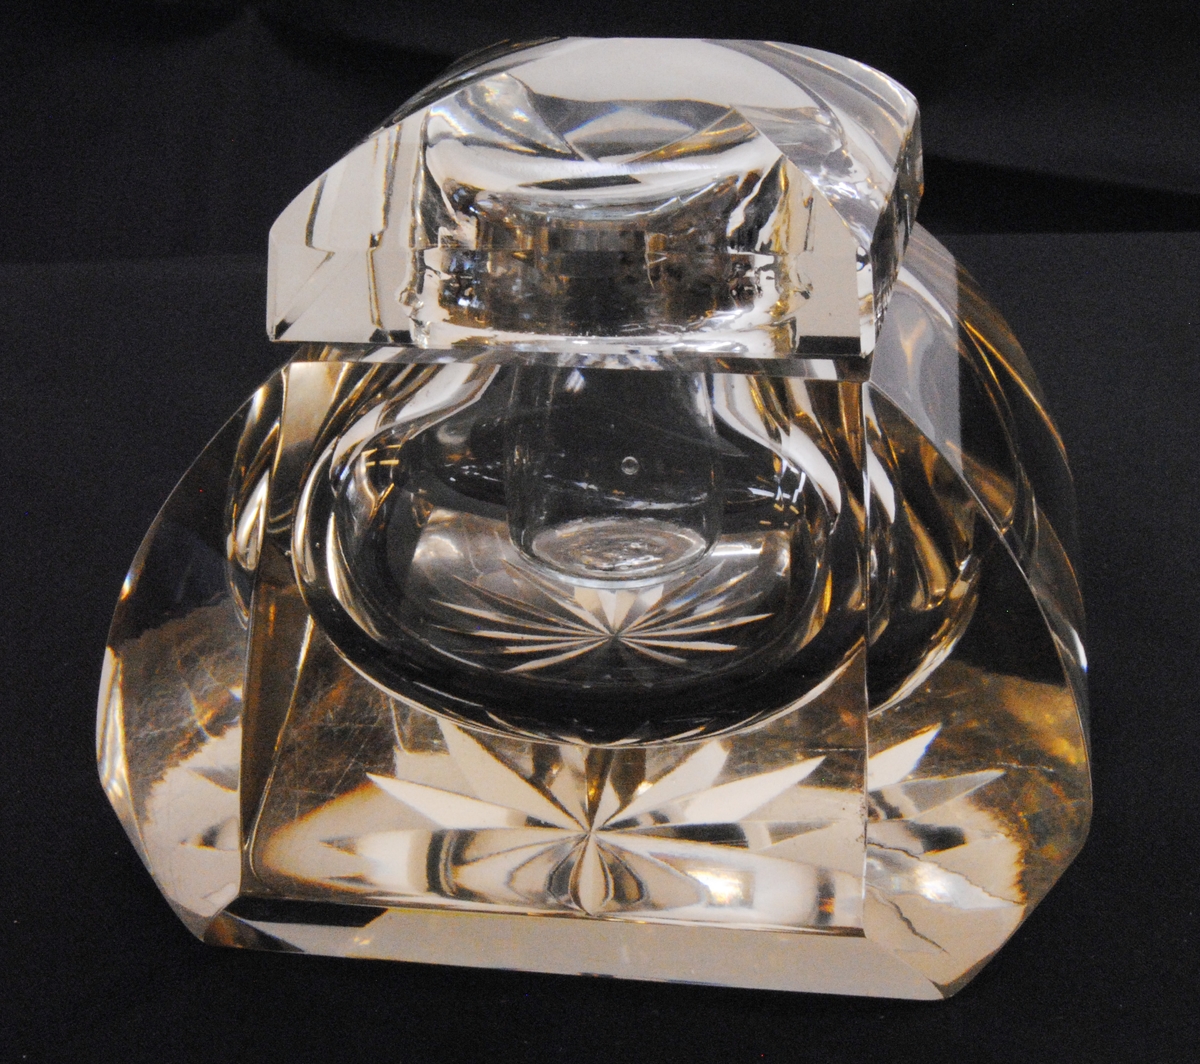 Bläckhorn av fasettslipat glas med glasinsats för bläck, samt med lock. Glasets färg har en ton av gul. Bläckhornets botten är stjärnslipad.